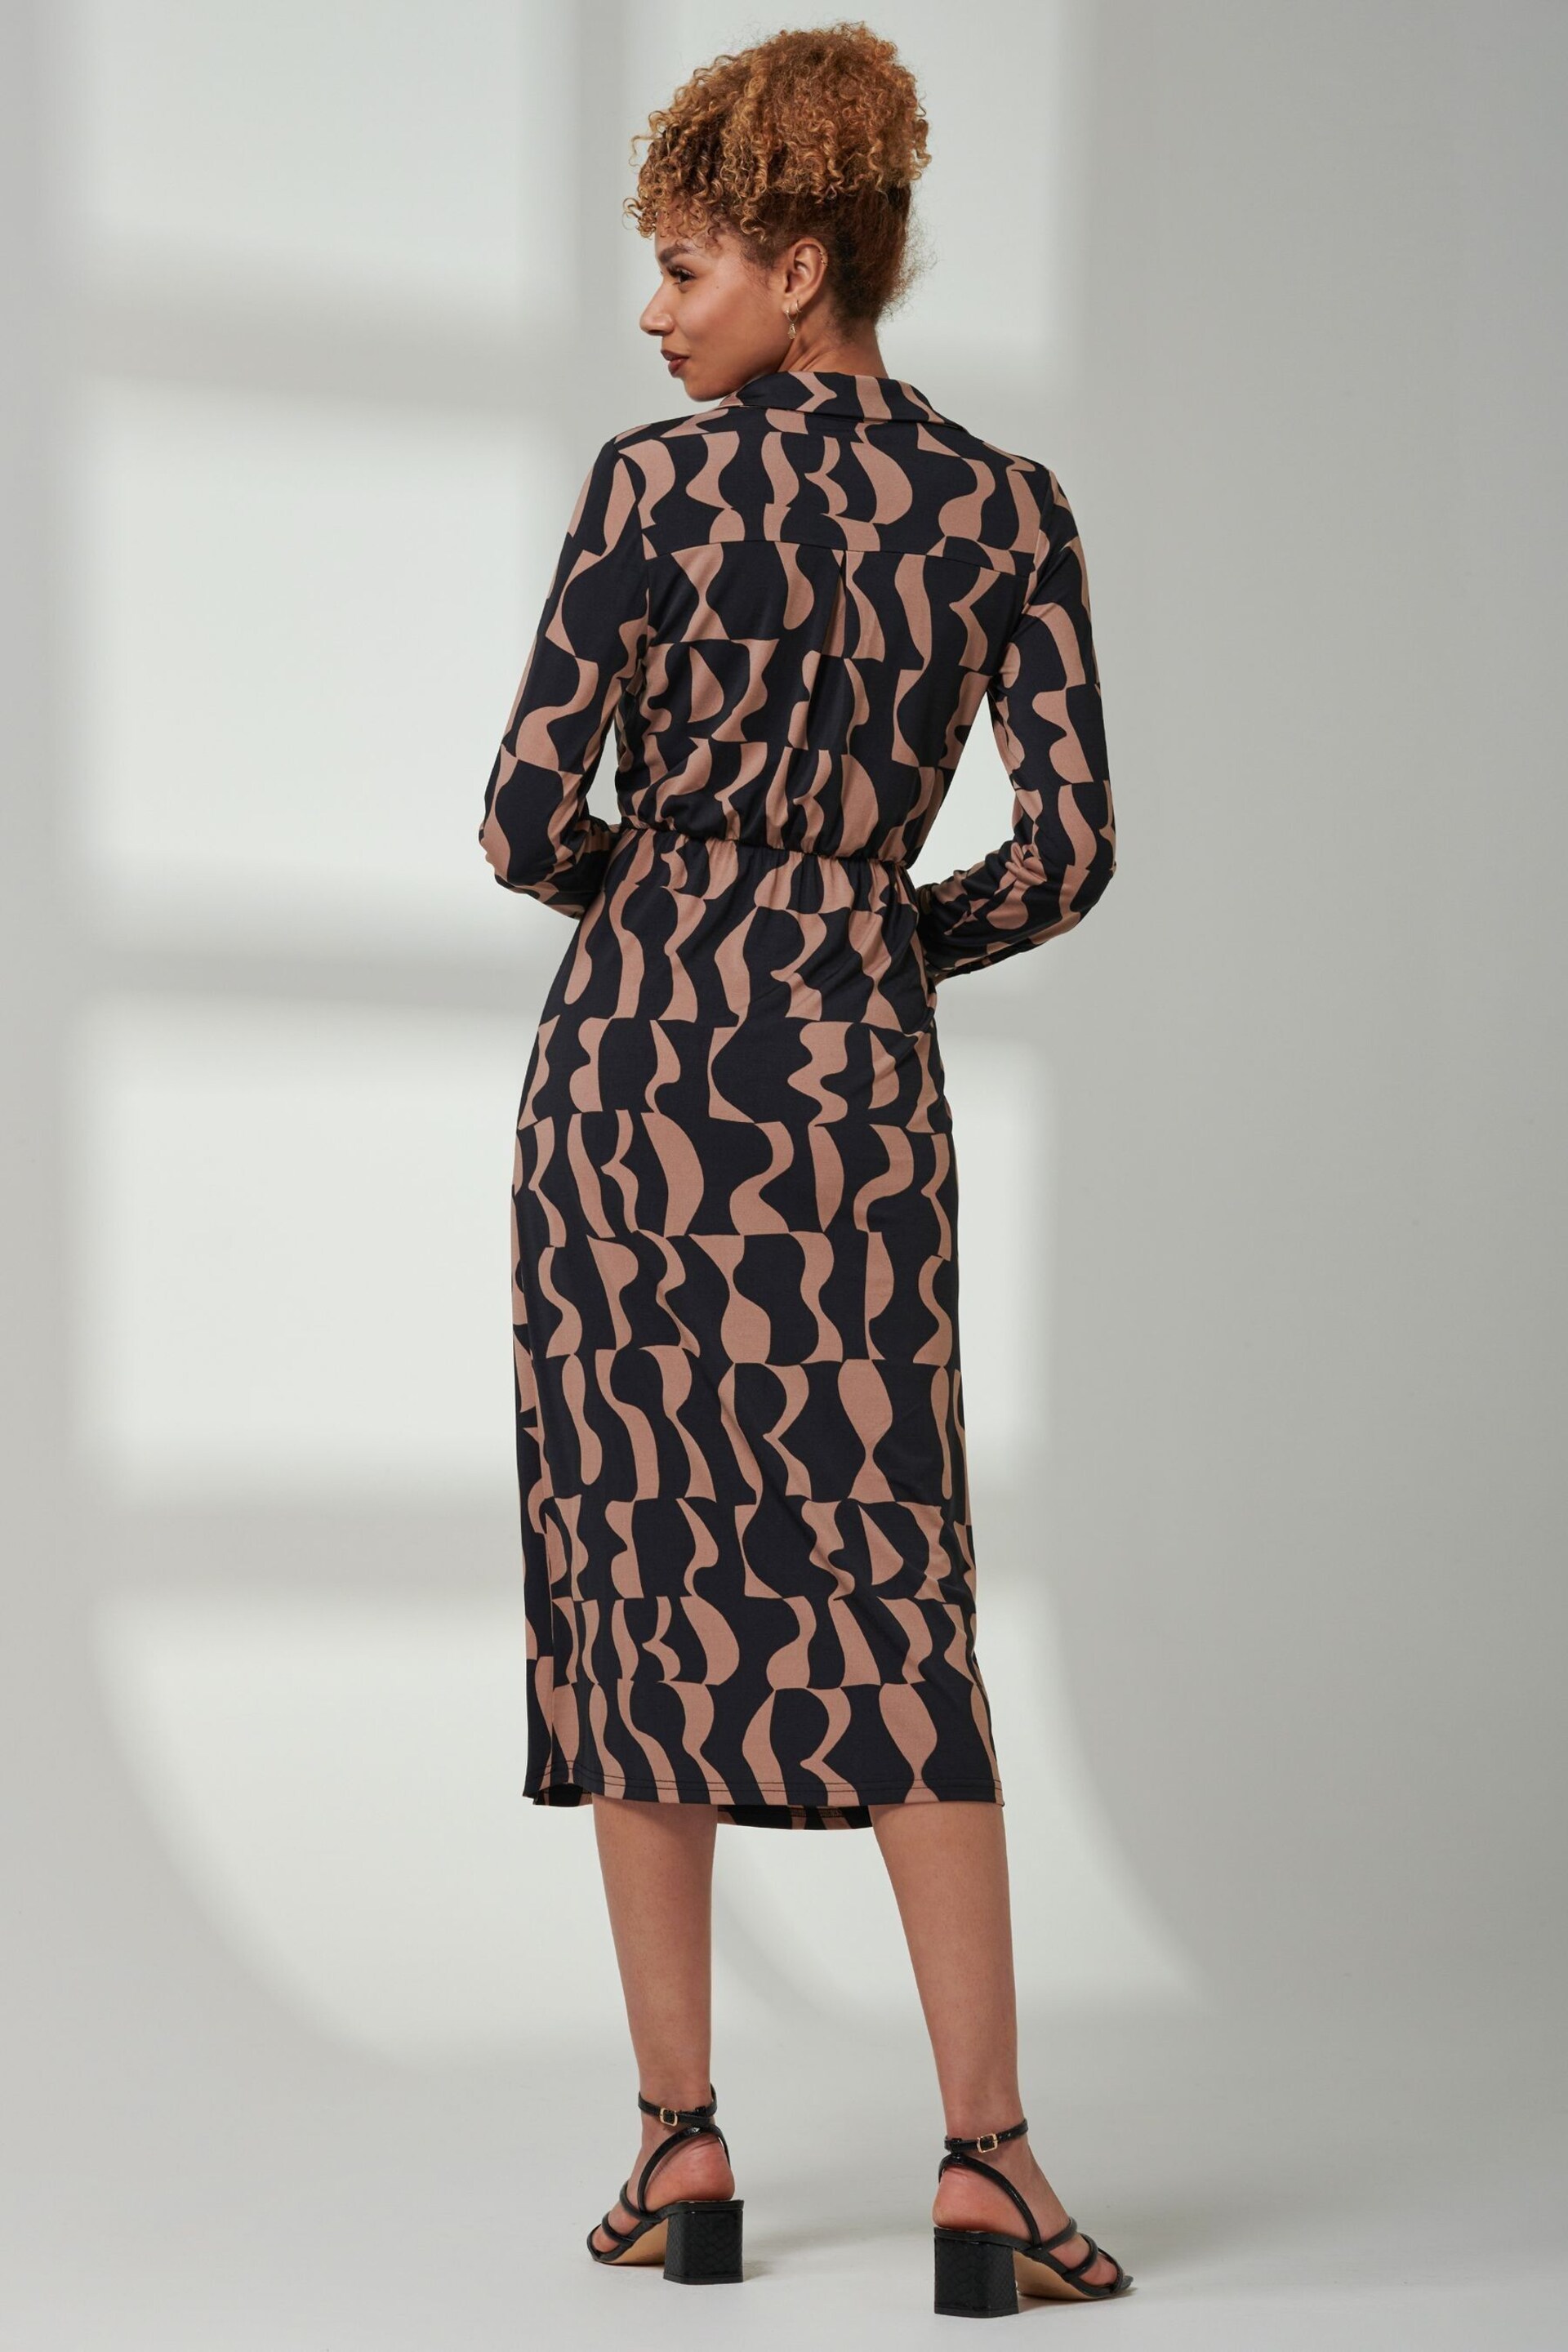 Jolie Moi Brown Becca Long Sleeve Jersey Shirt Dress - Image 2 of 6